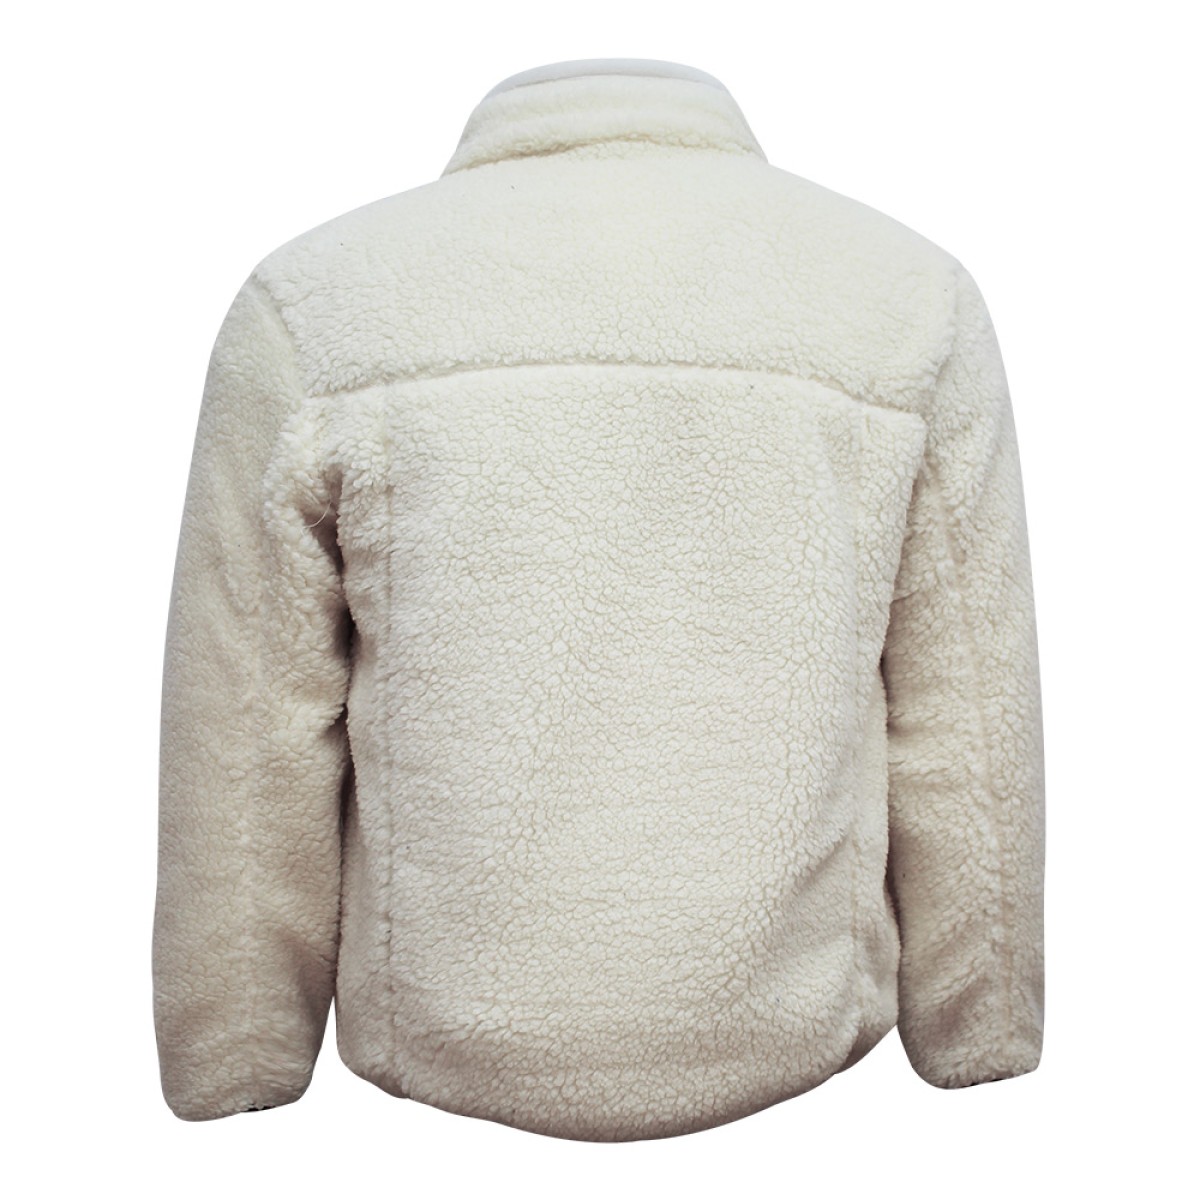 men-thick-sheep-jacket-ksj05922-7a-1